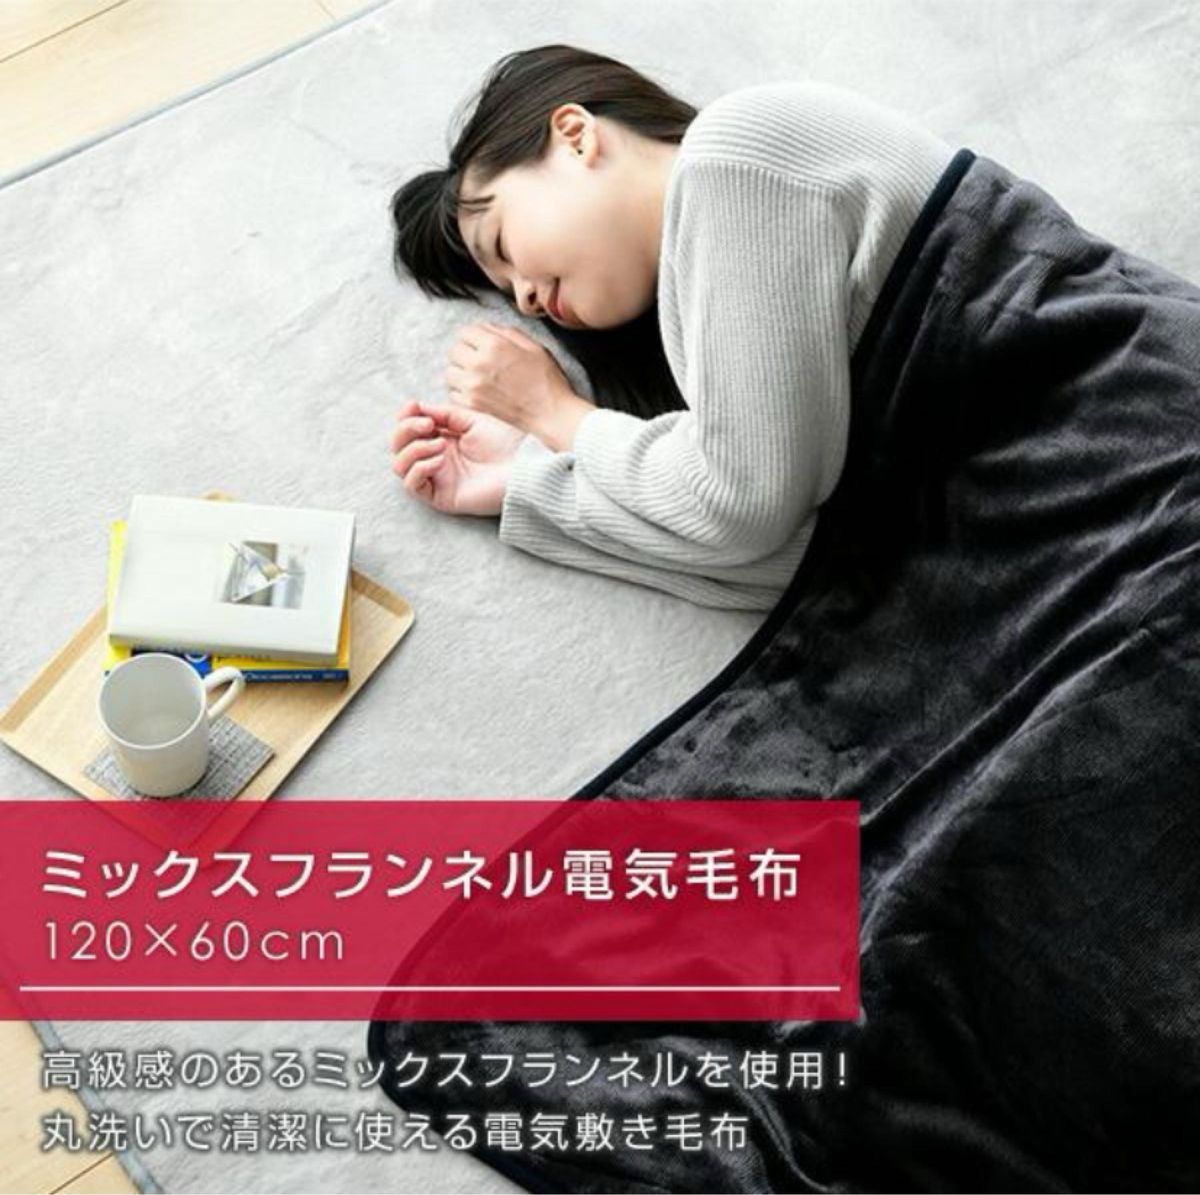 【新品未使用】山善YHK-46MFひざ掛け電気毛布ミックスフランネル120×60